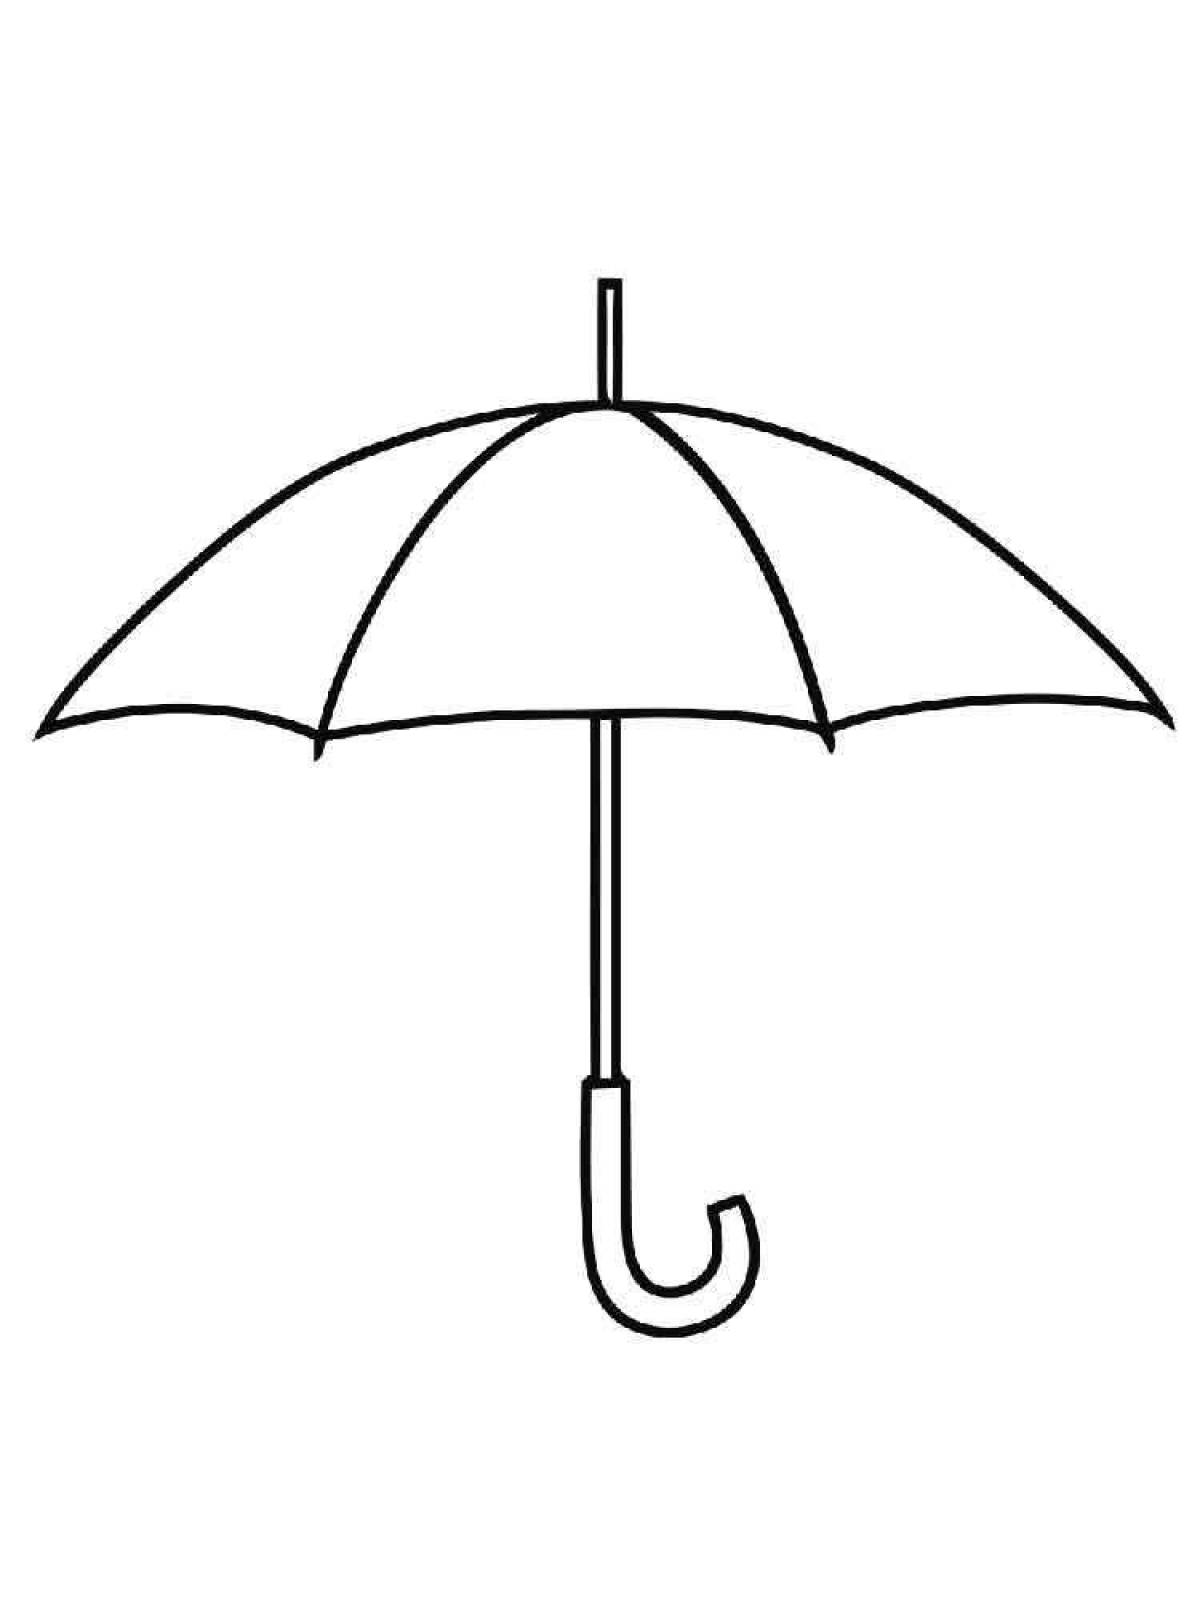 Красочная и игривая раскраска зонтик для детей